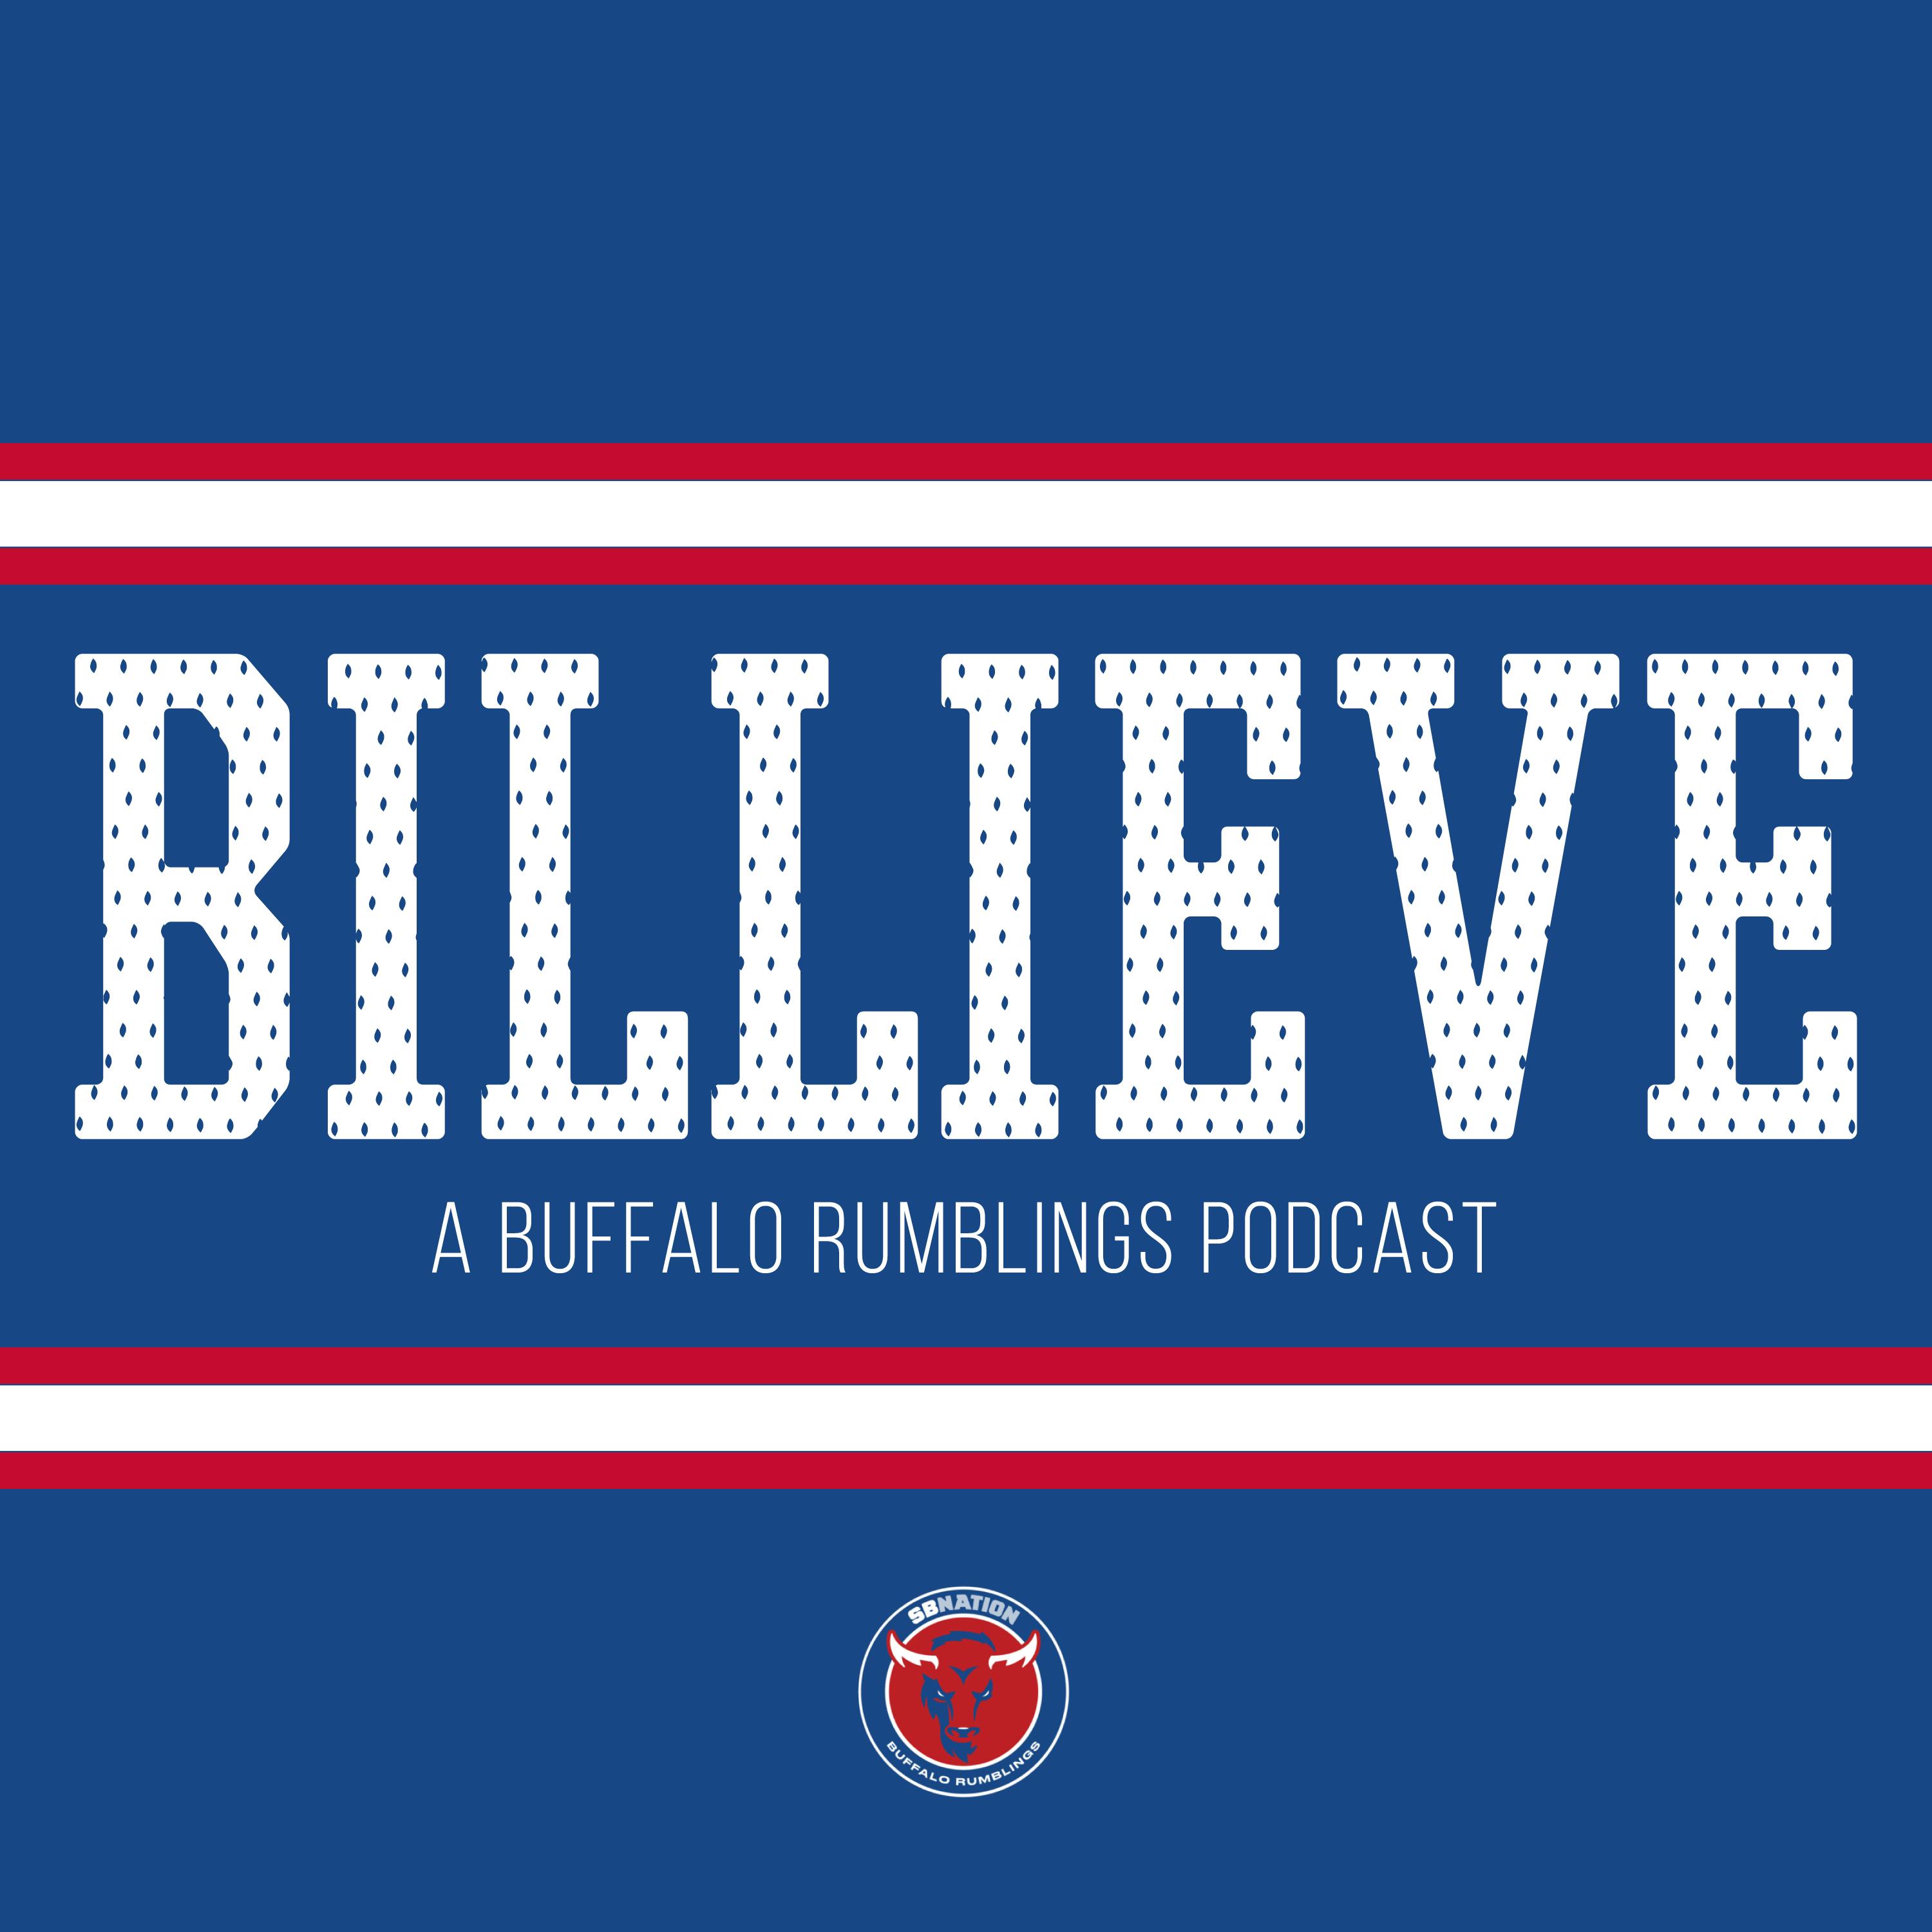 Billieve: Balanced Attack Sparks Bills